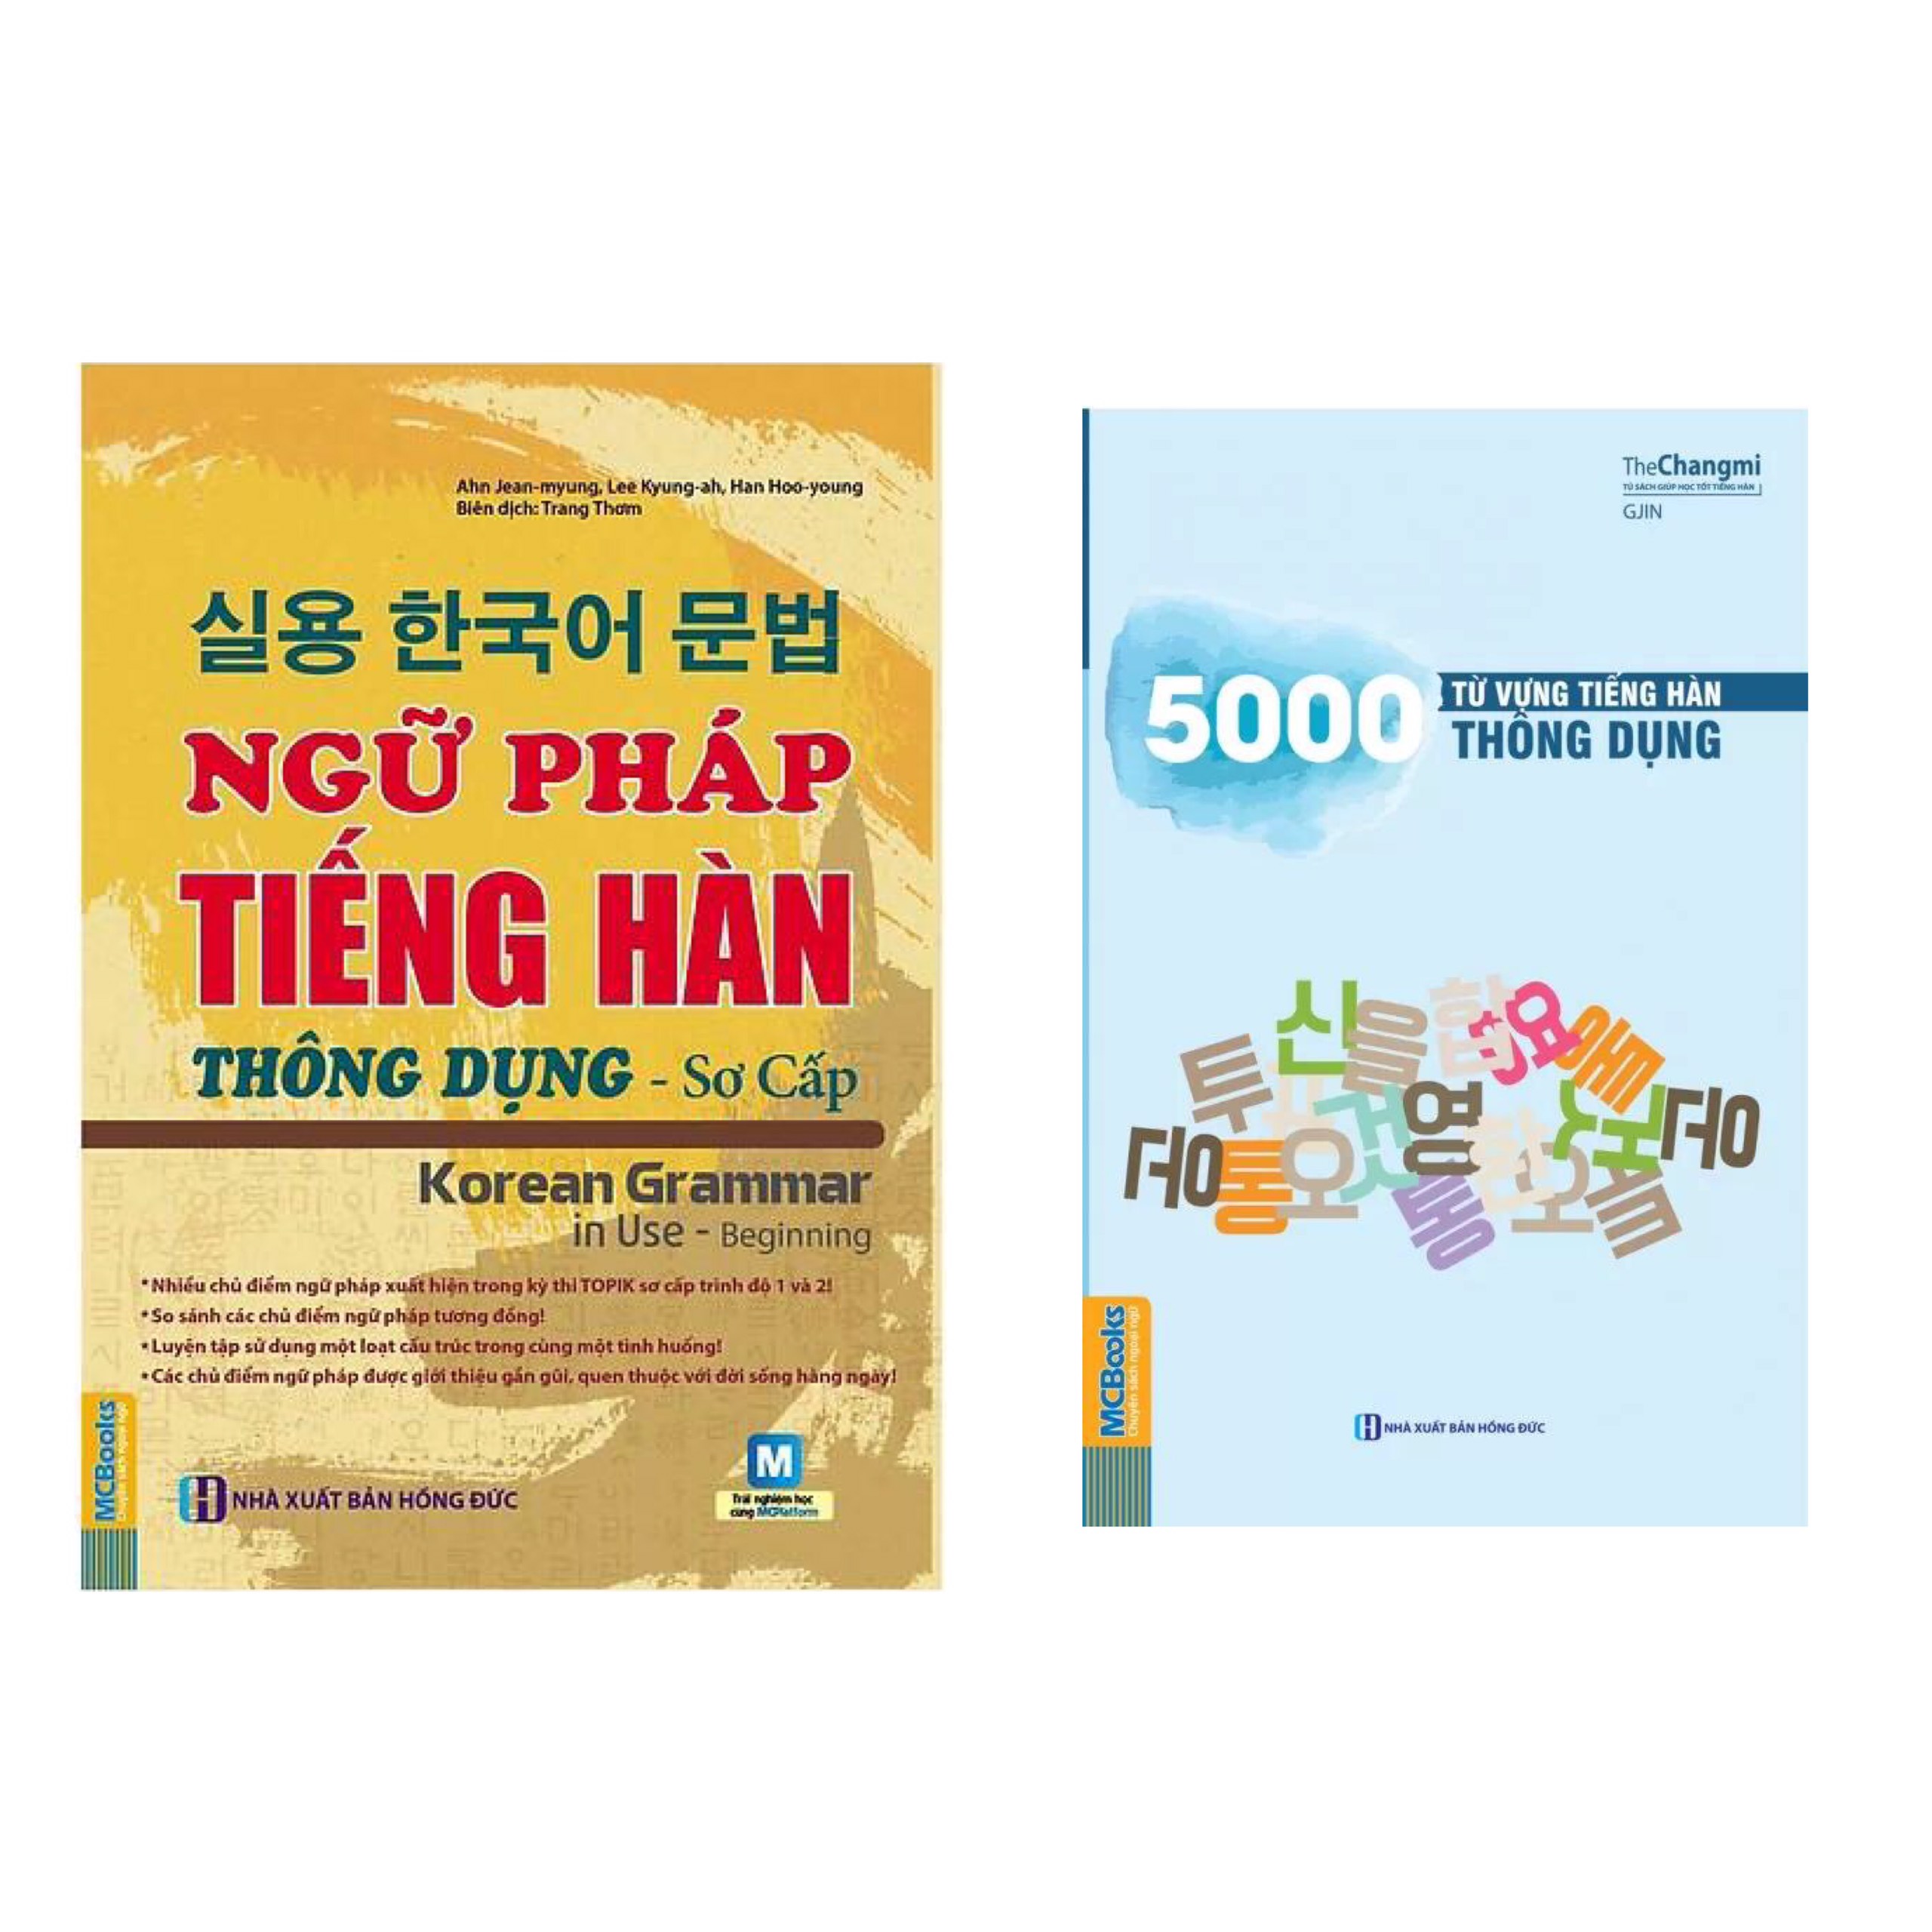 Combo Sách Học Tiếng Hàn: Ngữ Pháp Tiếng Hàn Thông Dụng - Sơ Cấp (Dùng APP MCBooks) + 5000 Từ Vựng Tiếng Hàn Thông Dụng / Sách Học Ngoại Ngữ Hay (Tặng Kèm Bookmark Thiết Kế Happy Life)